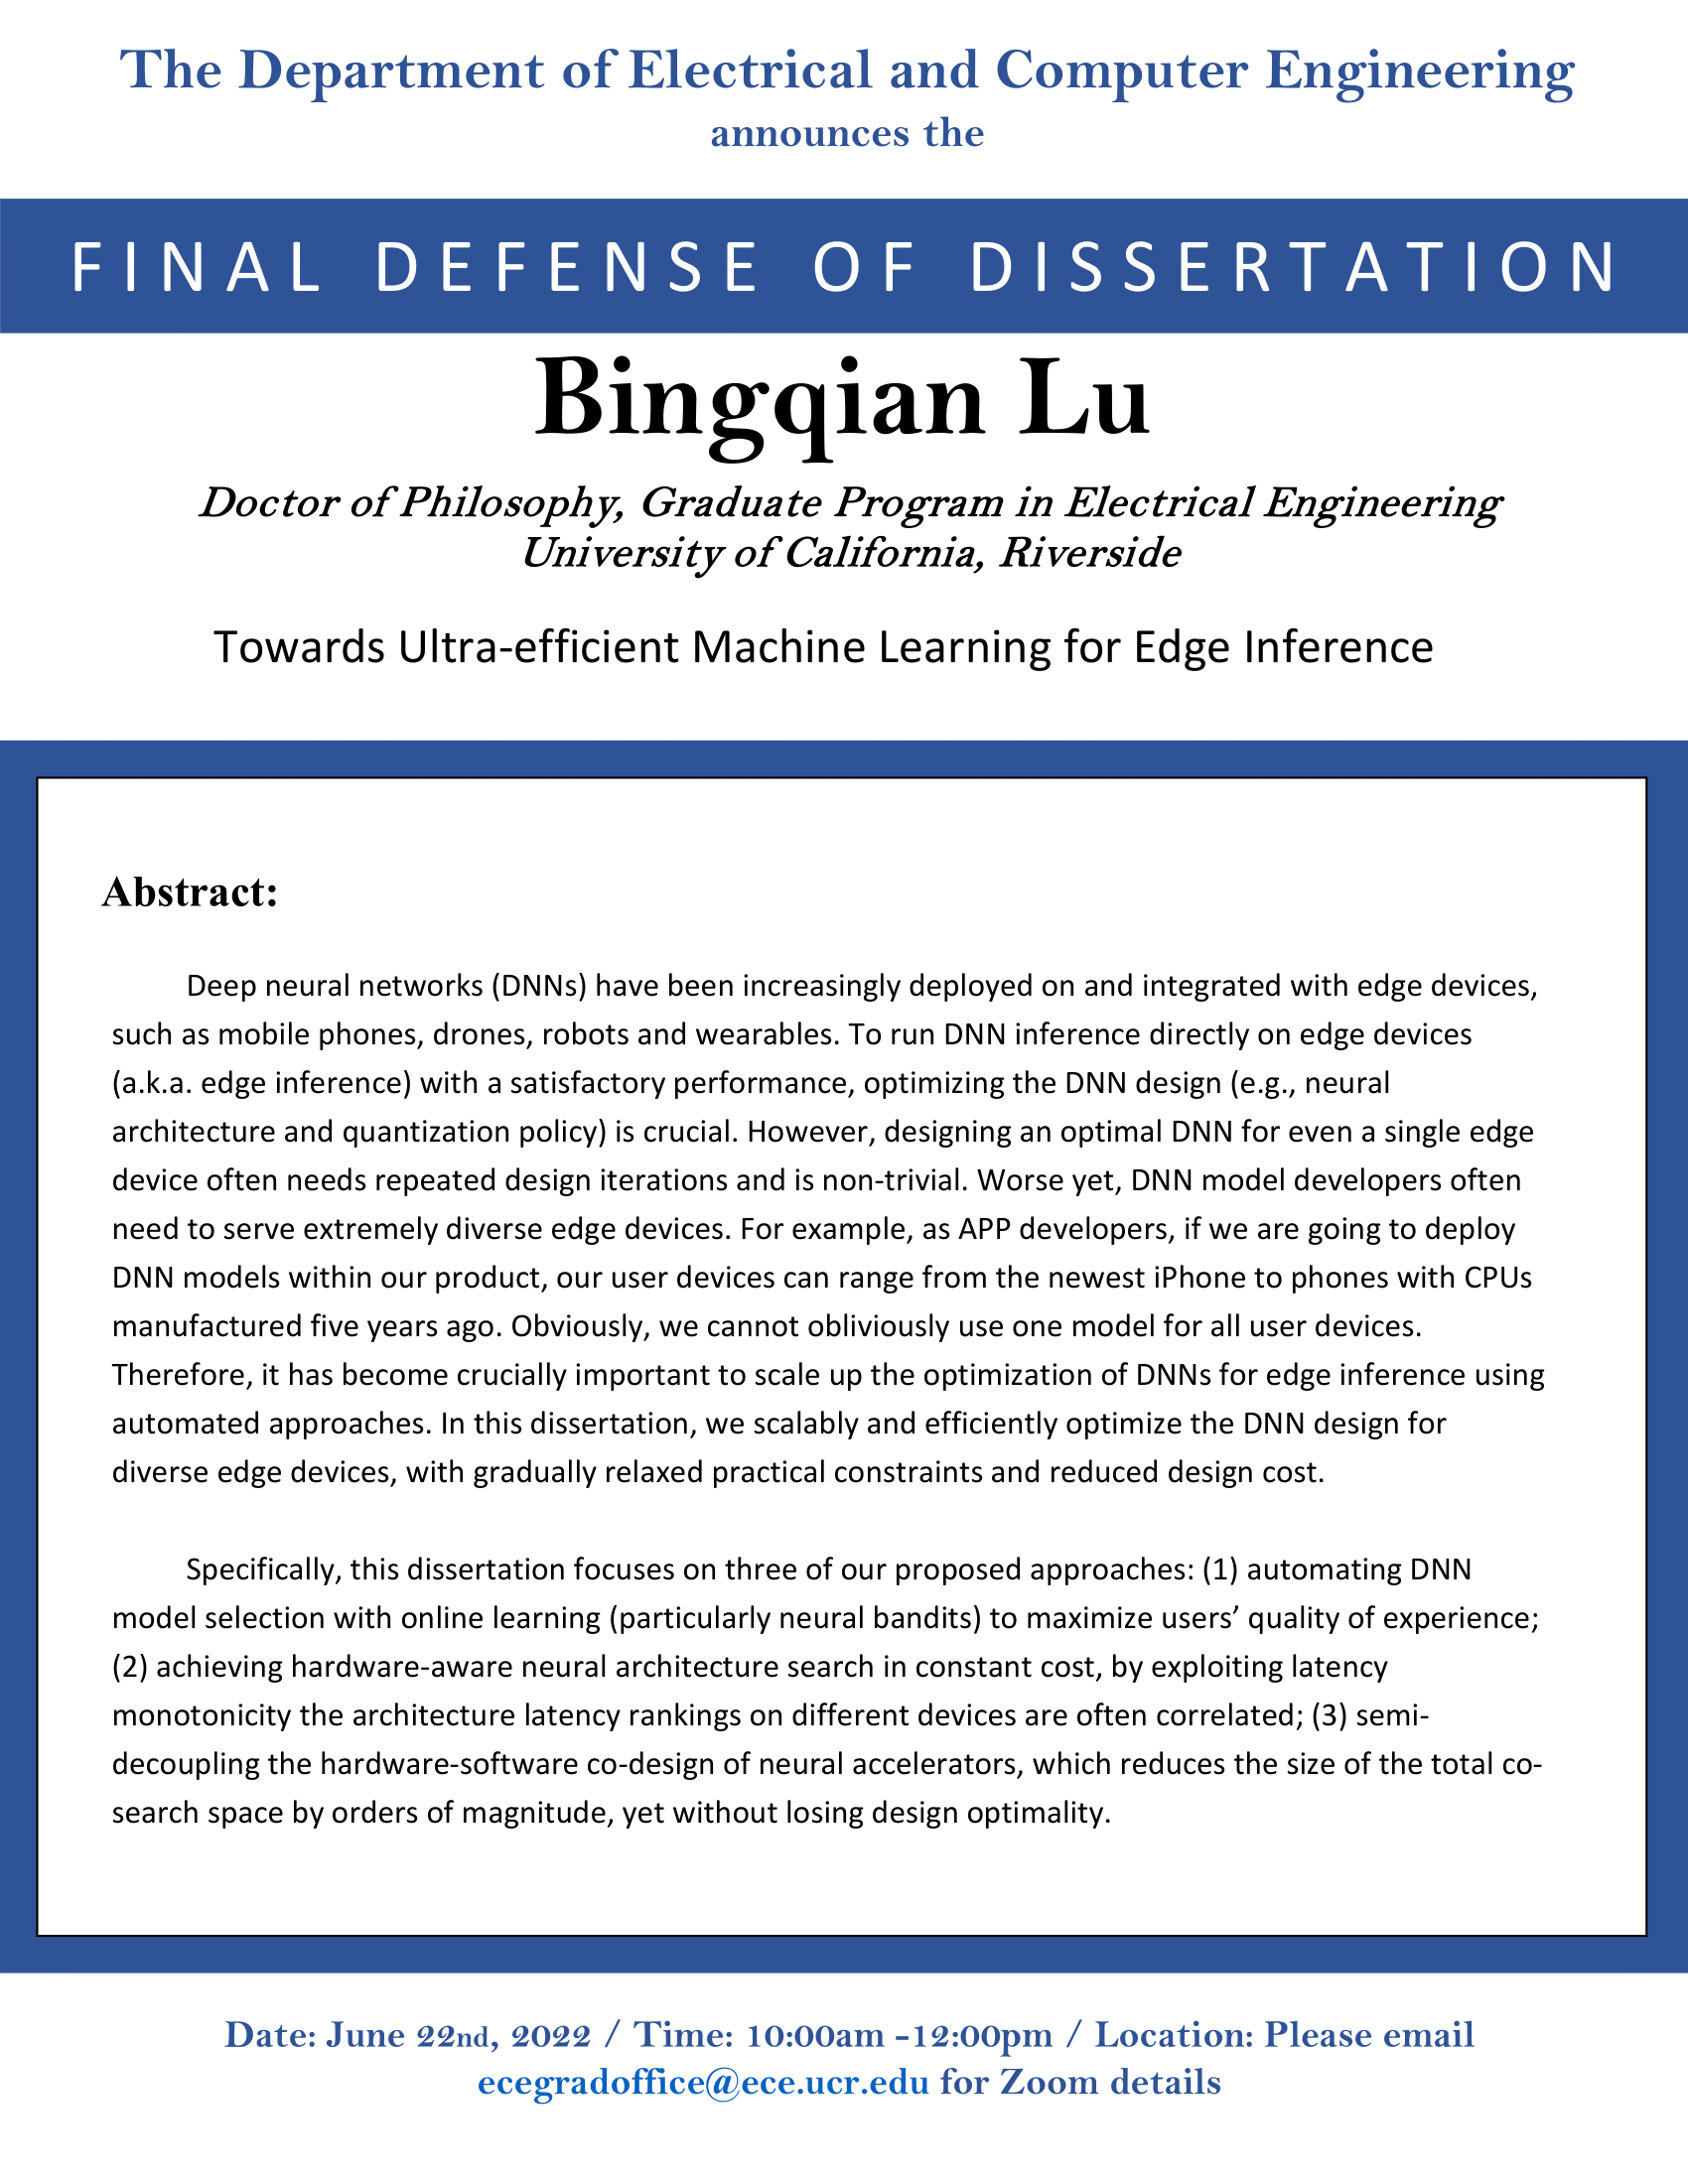 Bingqian Lu